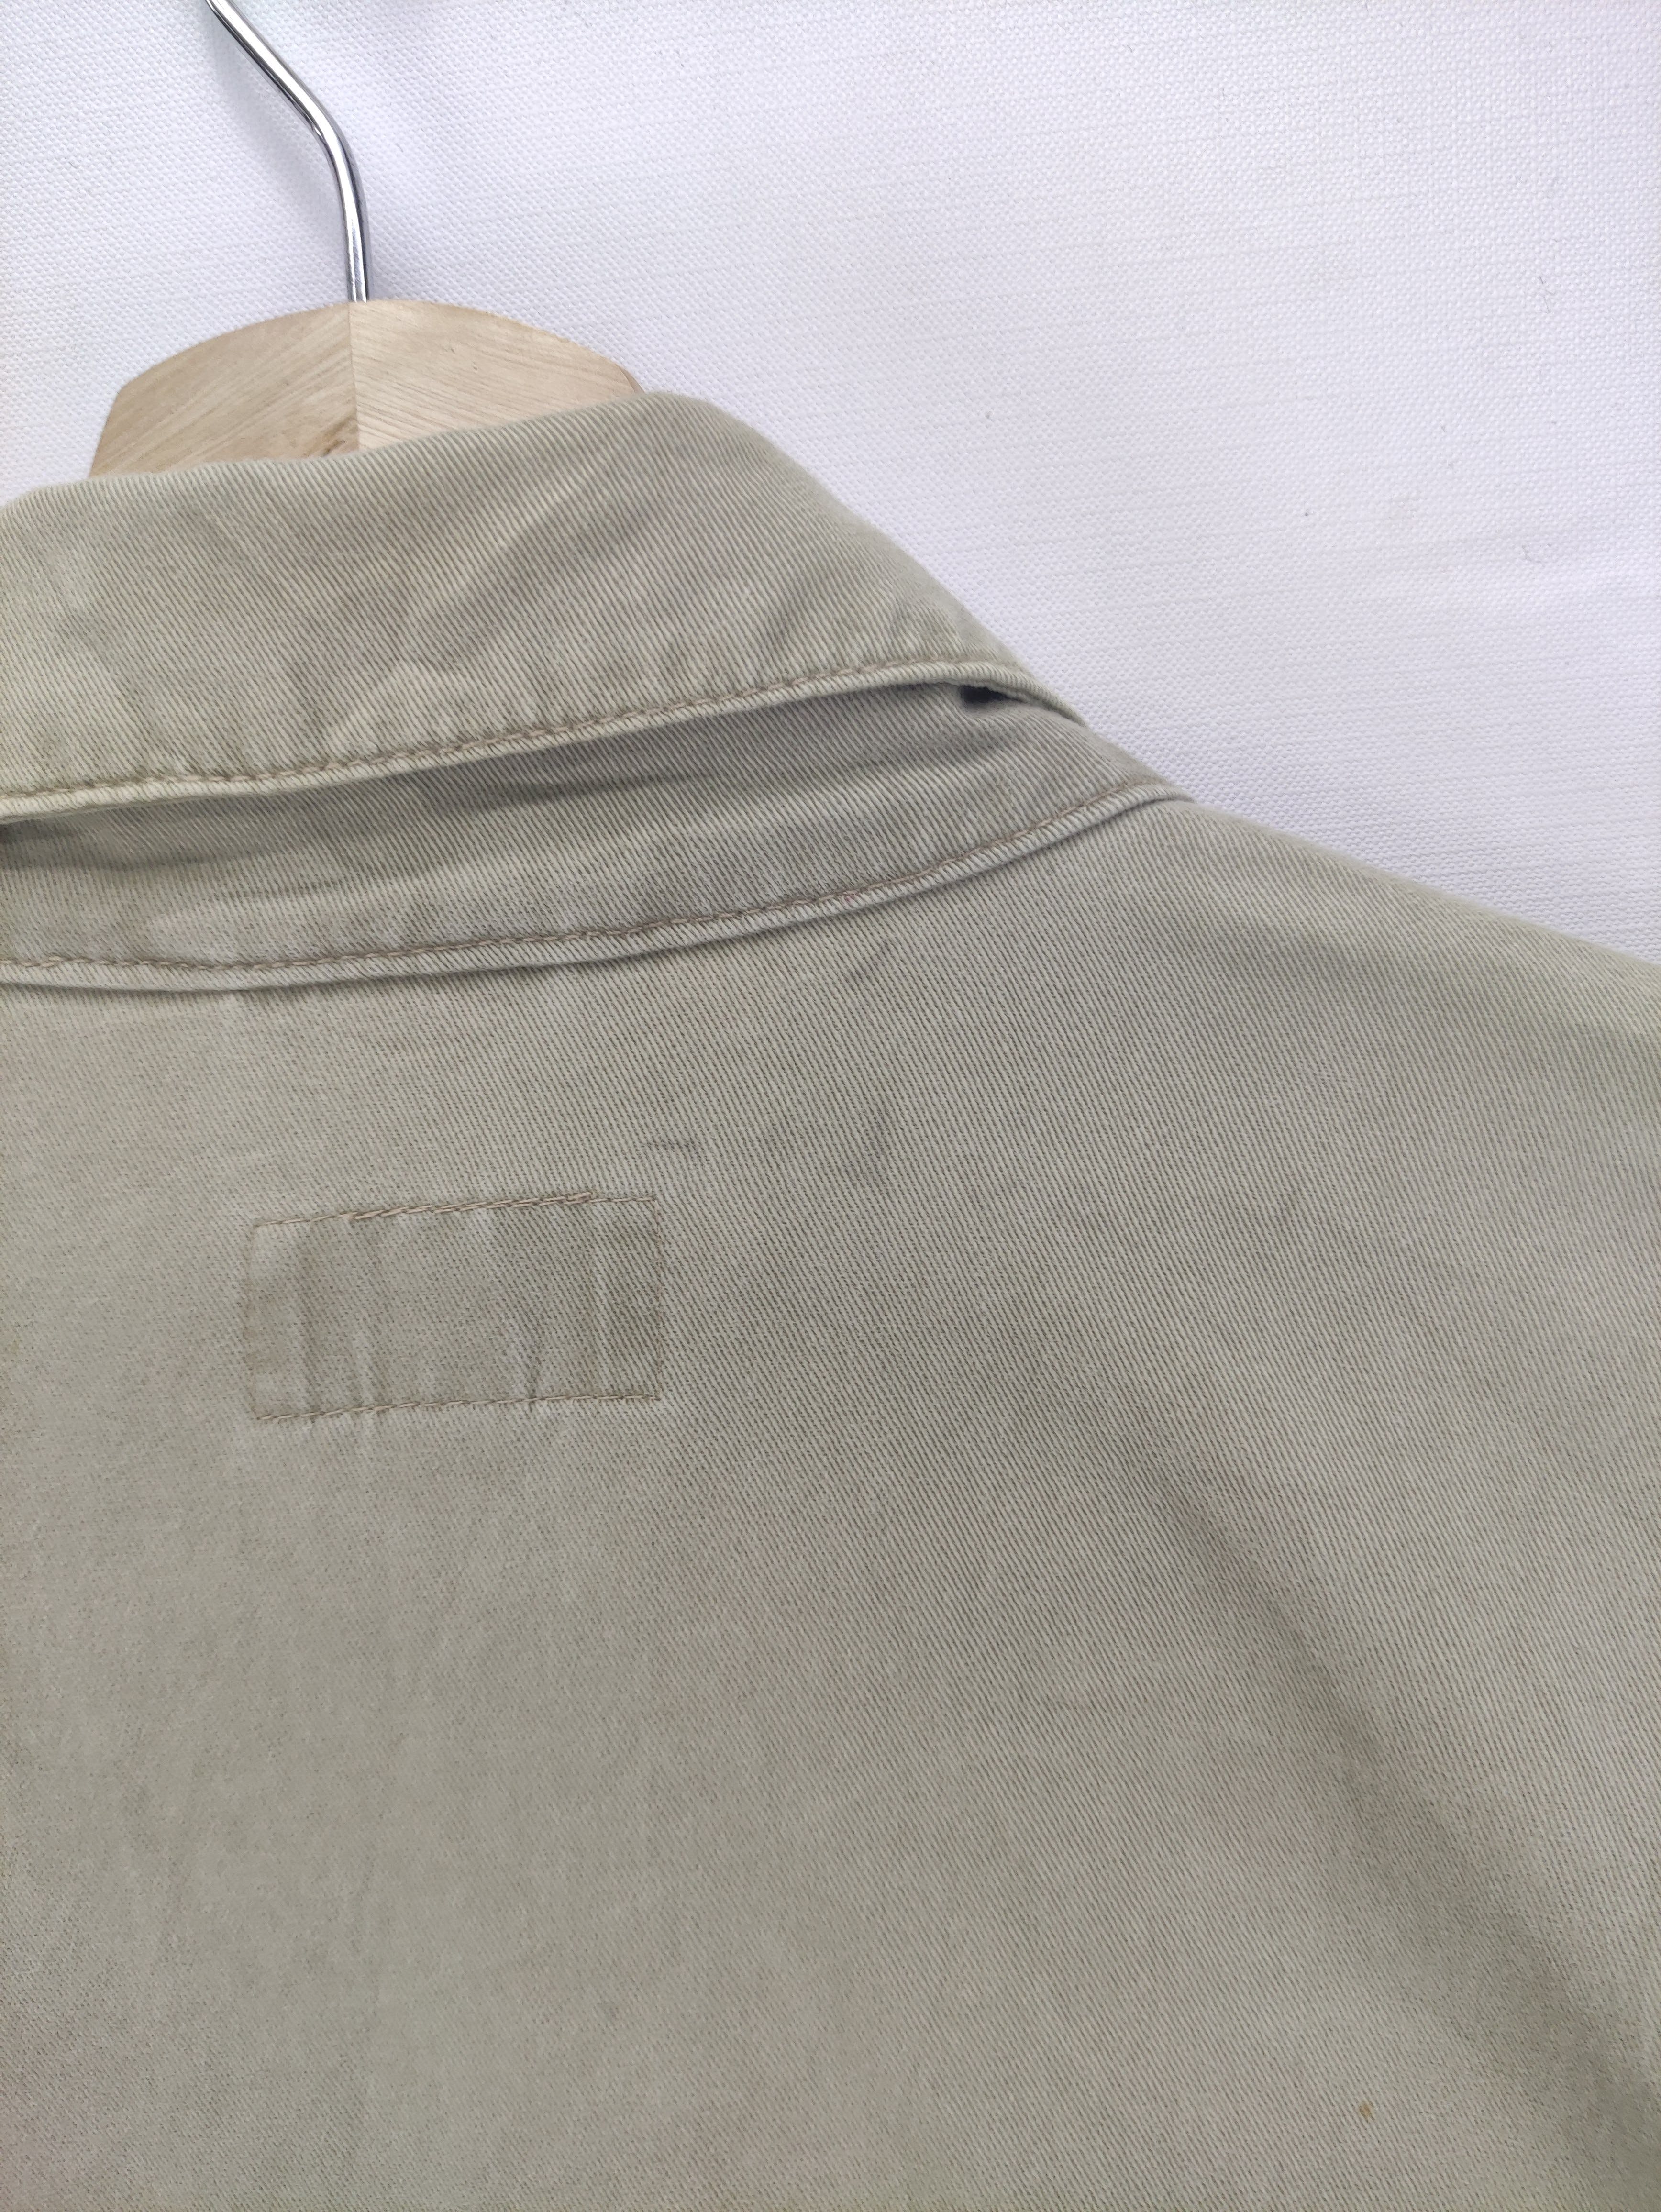 Vintage Smith's Work Wear Jacket Zipper - 10